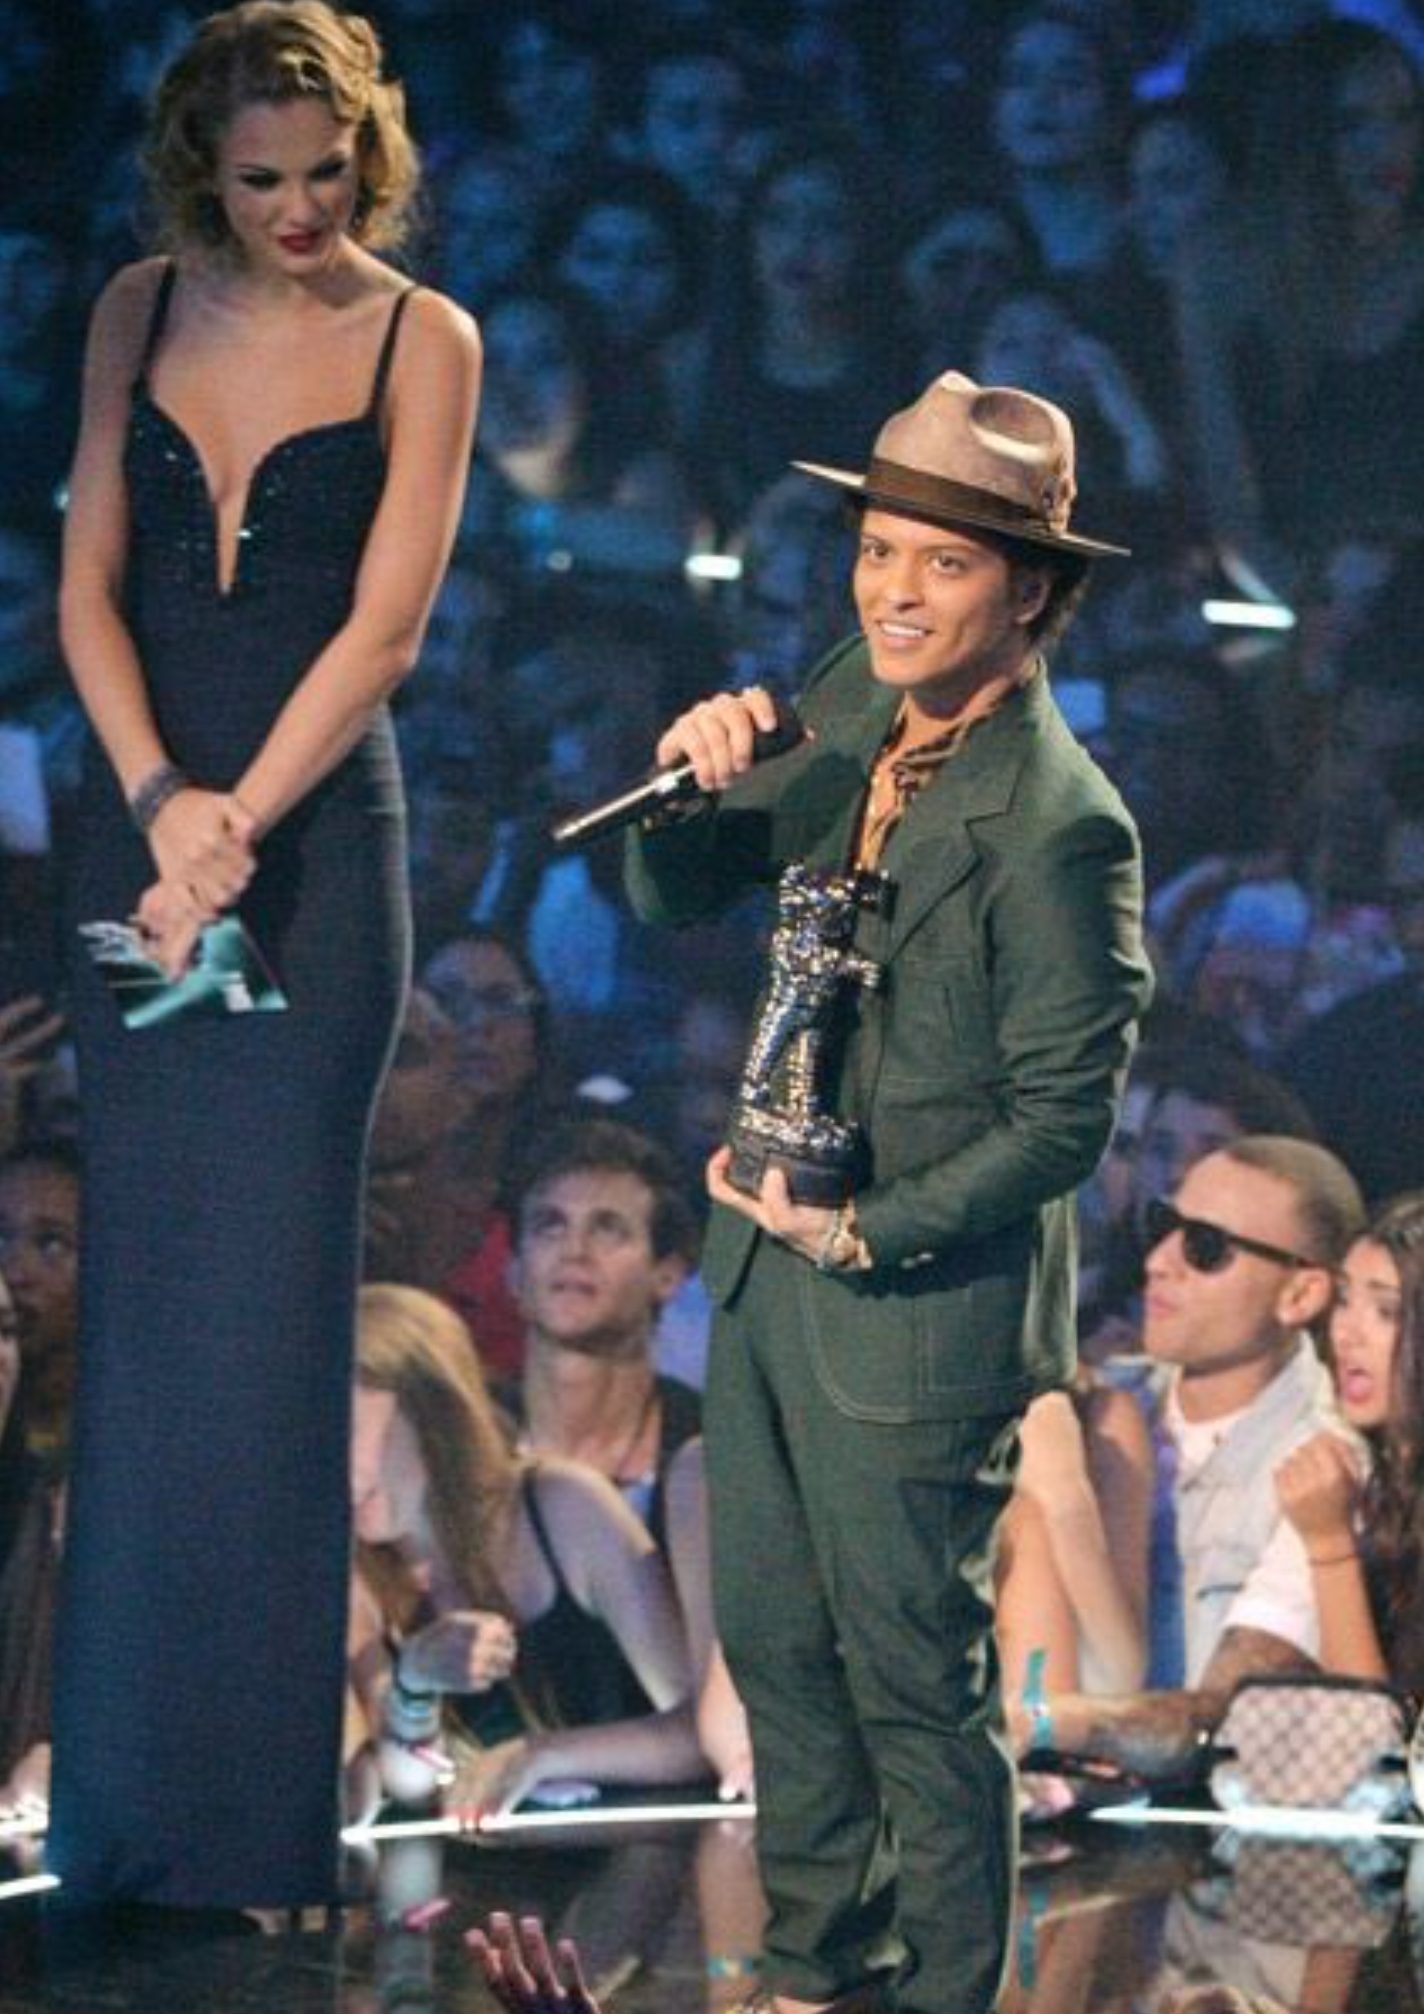 Bruno Mars short height vs taylor swift